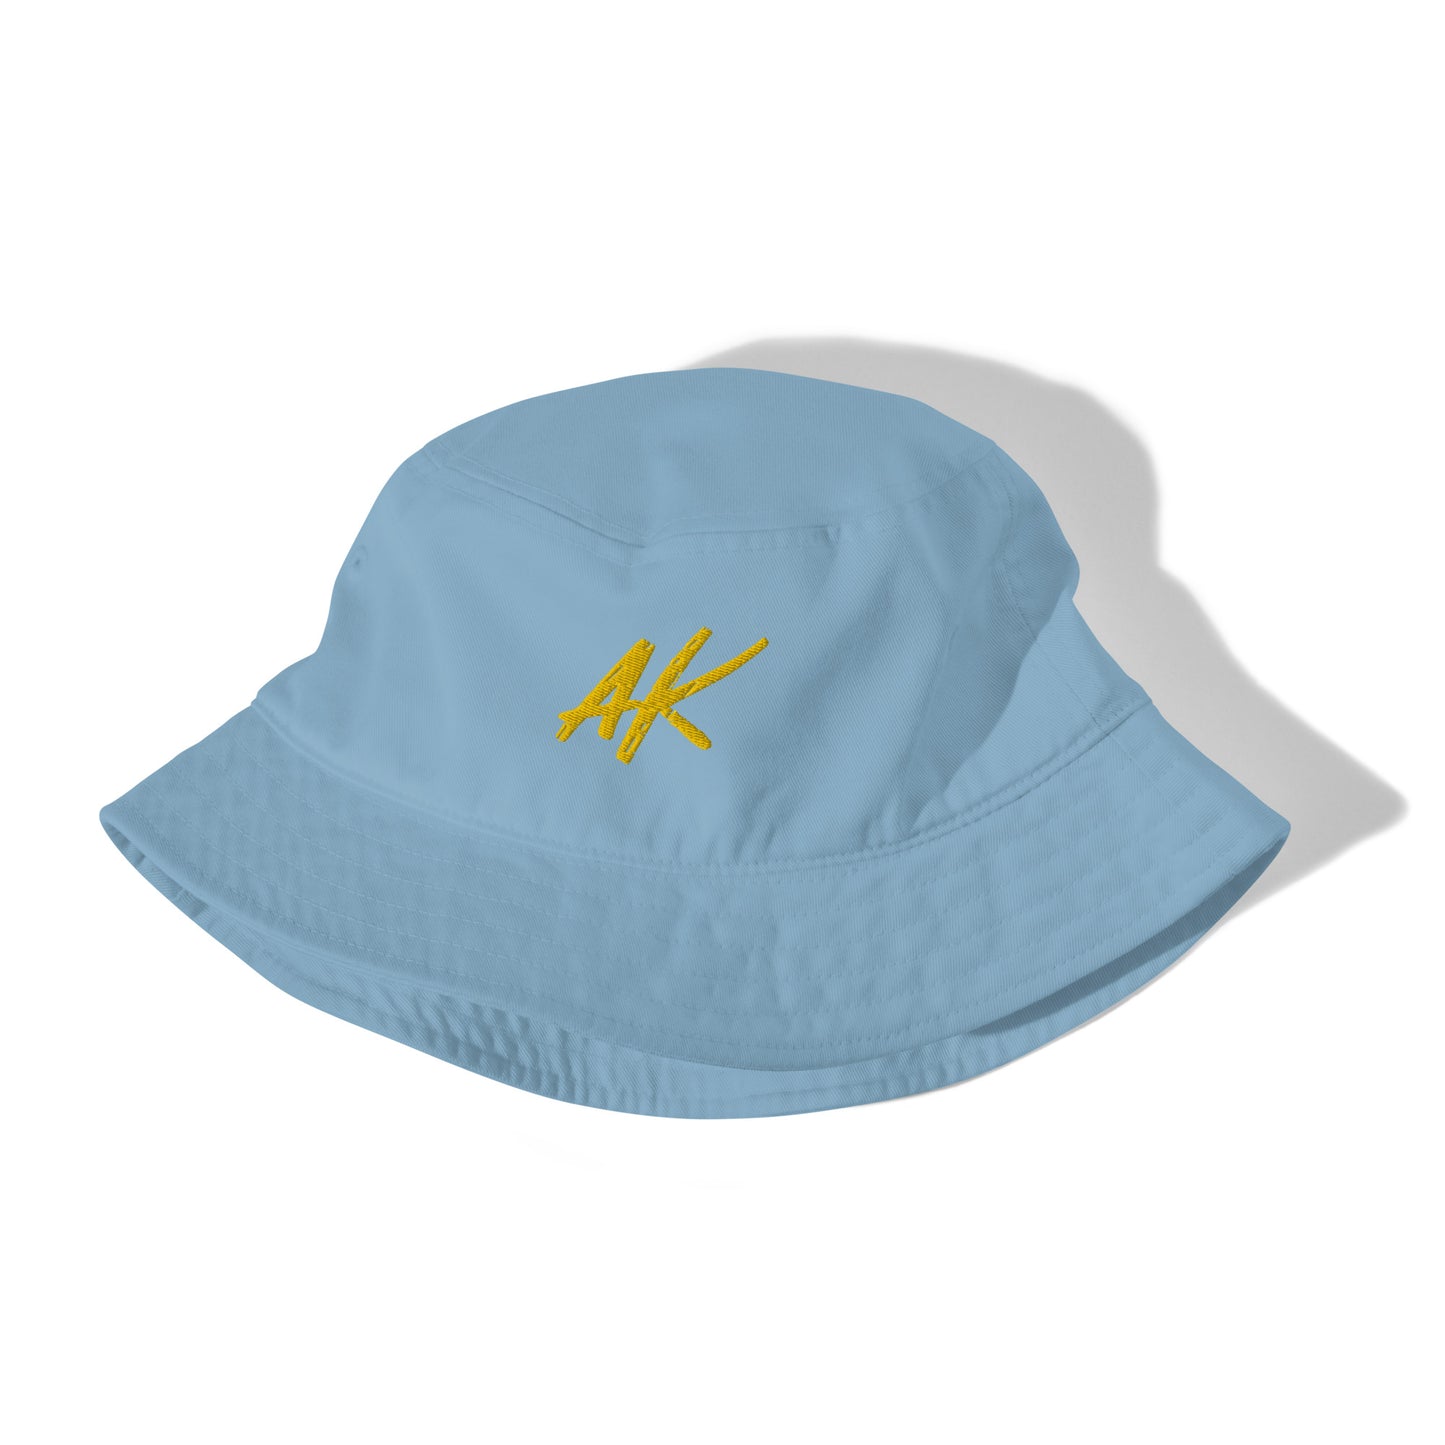 AK bucket hat (gold)